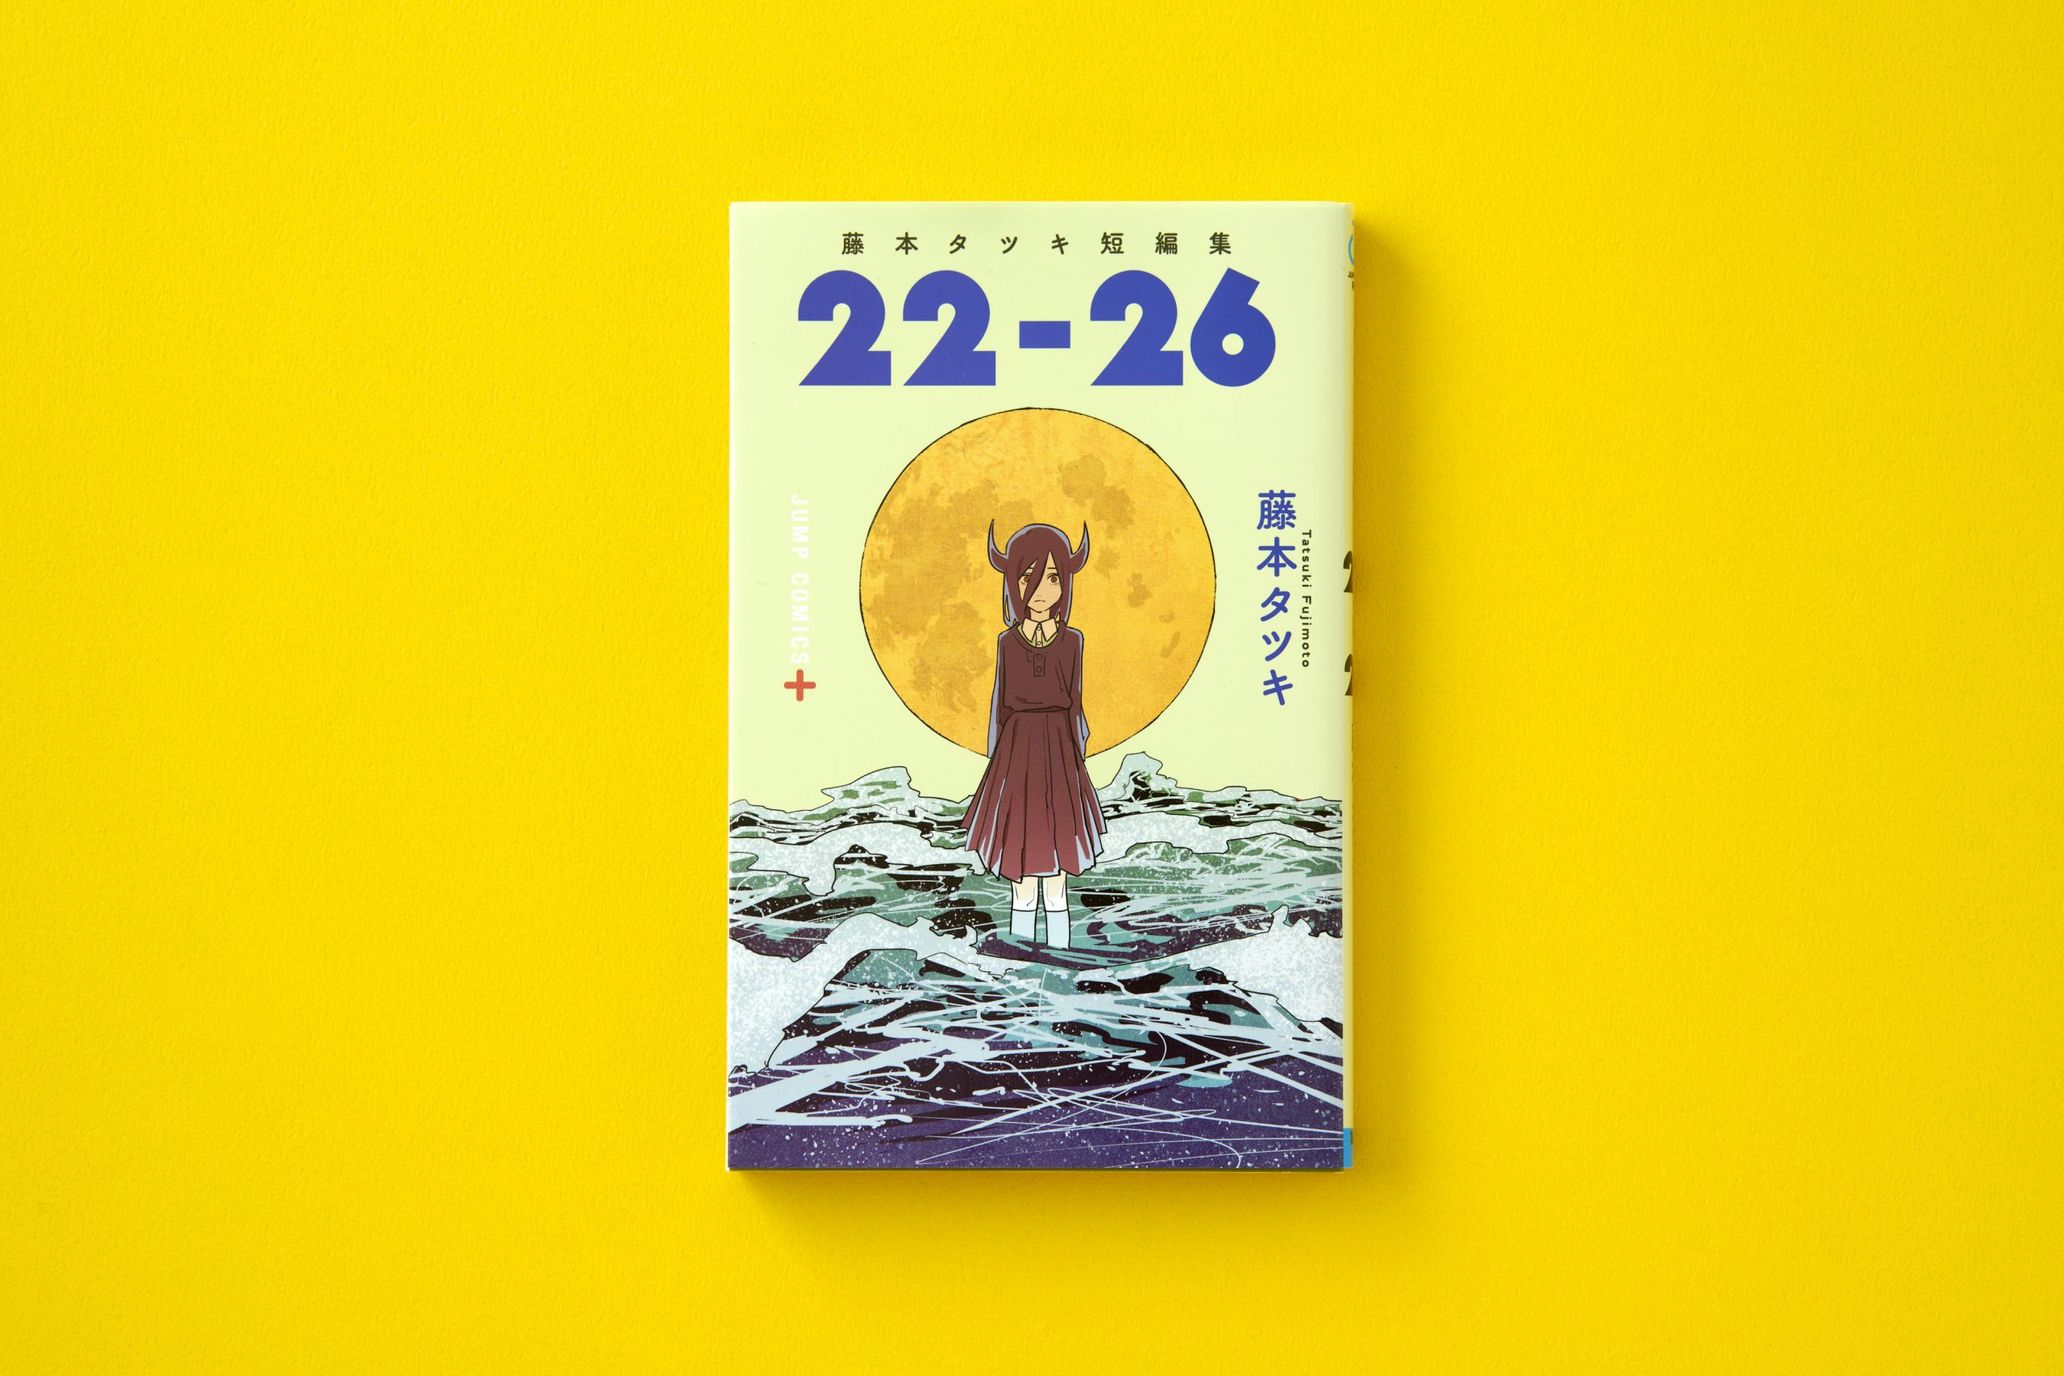 Tatsuki Fujimoto ”22-26”